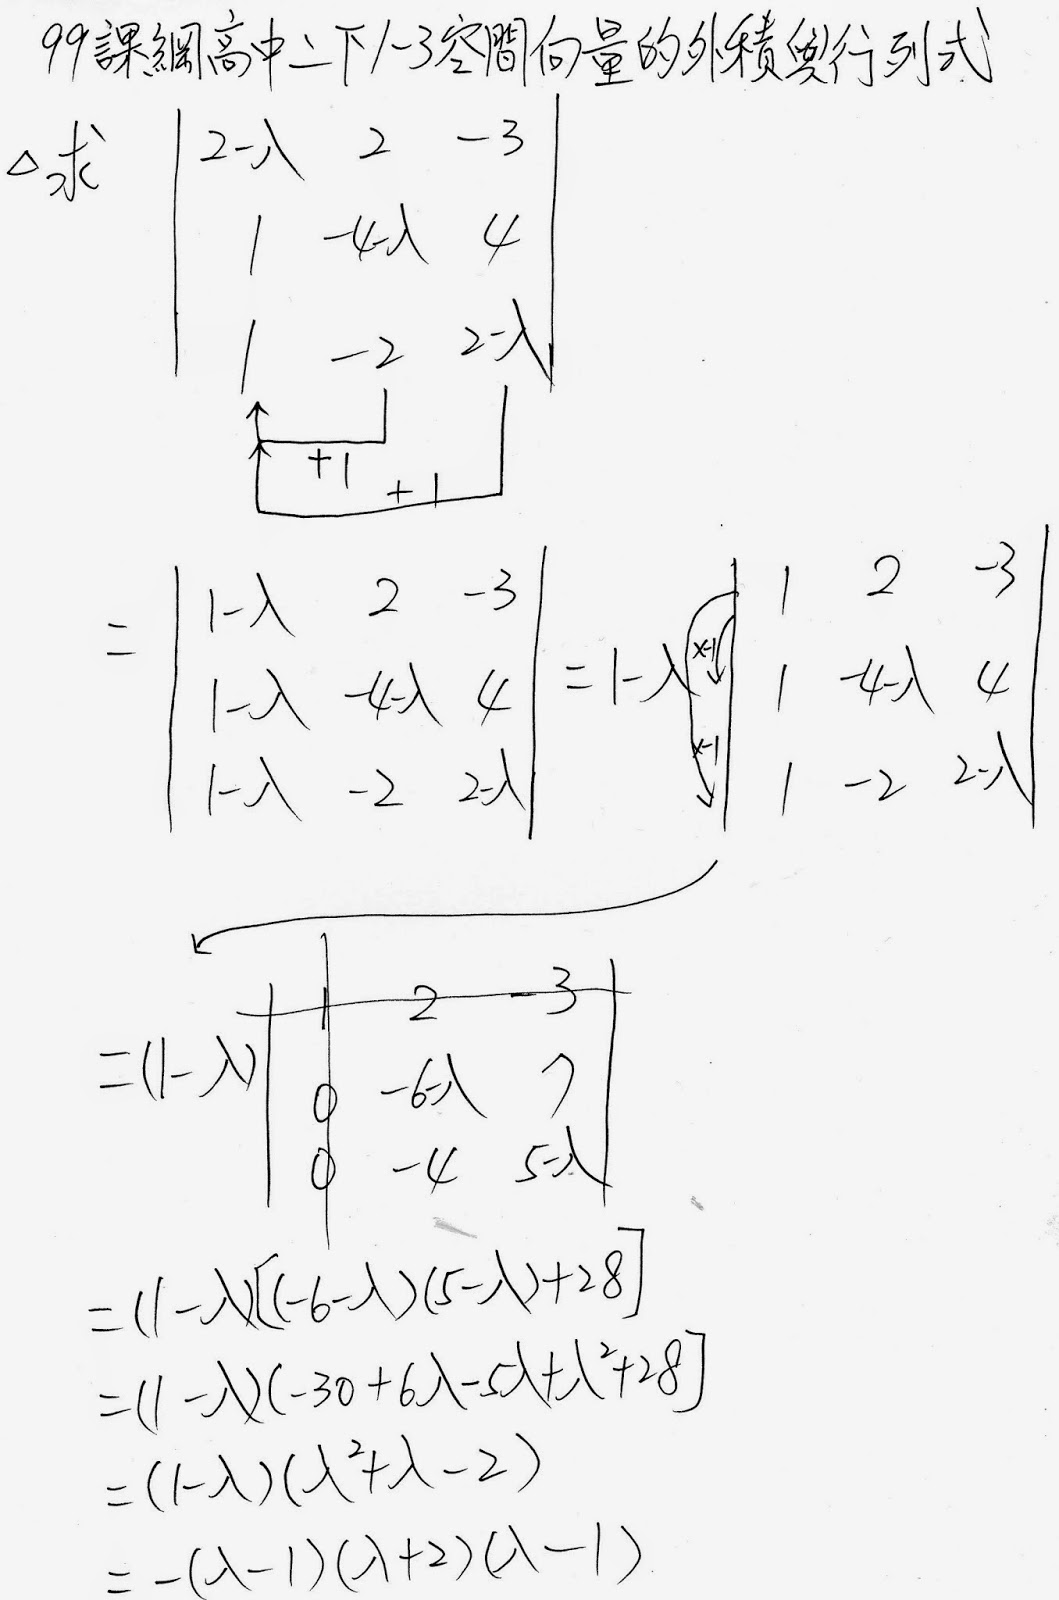 隨筆誌 1 3空間向量的外積與行列式 求行列式值基本運算問題